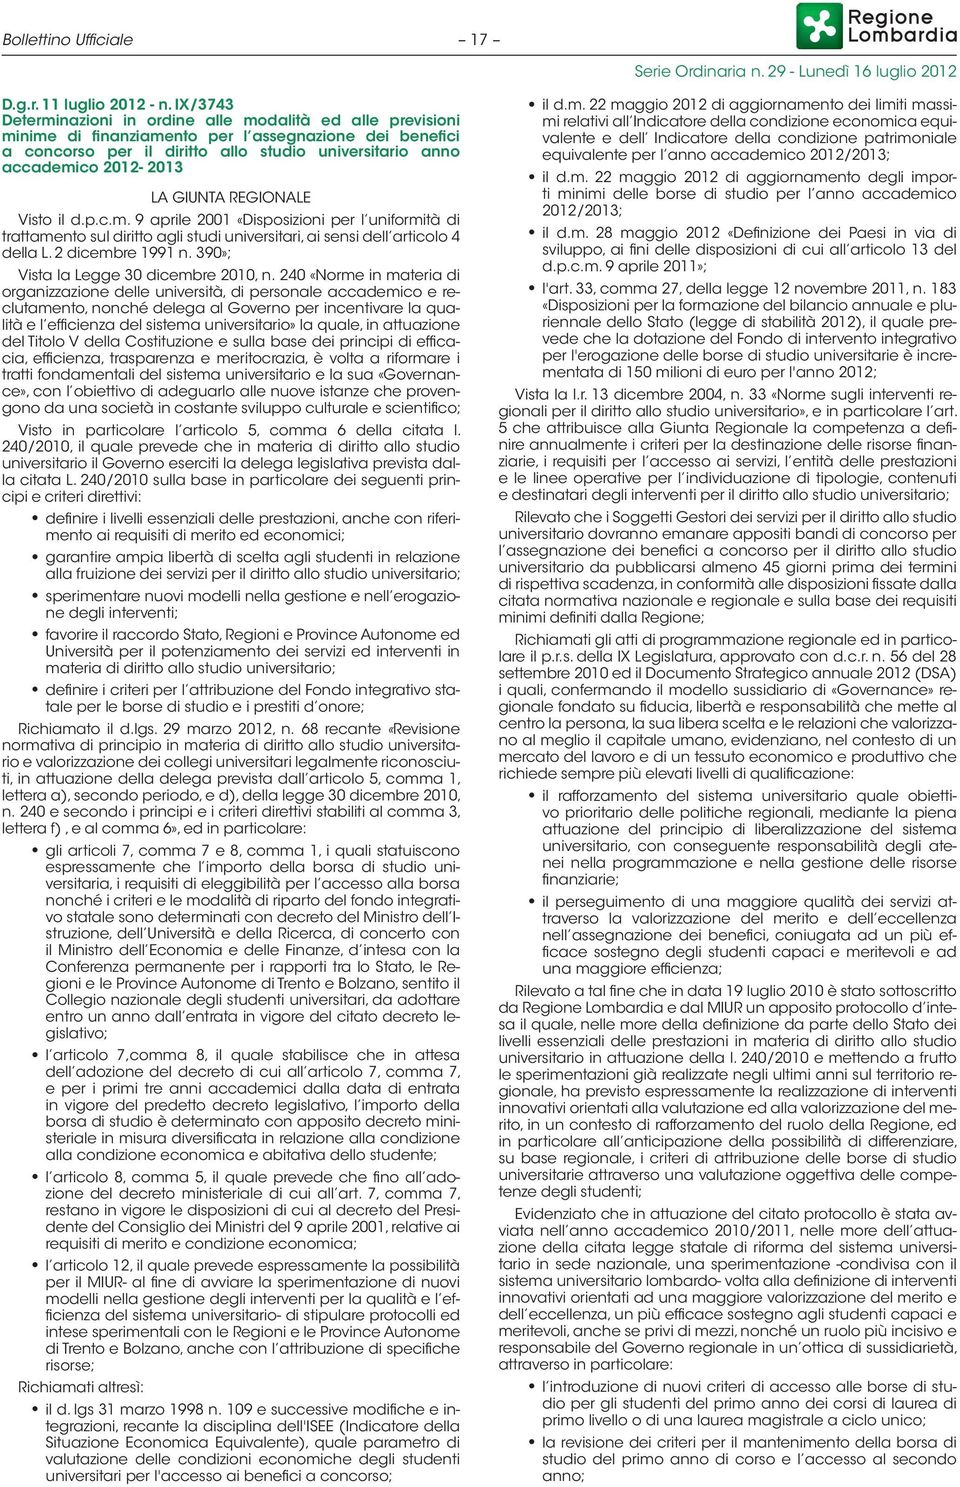 LA GIUNTA REGIONALE Visto il d.p.c.m. 9 aprile 2001 «Disposizioni per l uniformità di trattamento sul diritto agli studi universitari, ai sensi dell articolo 4 della L. 2 dicembre 1991 n.